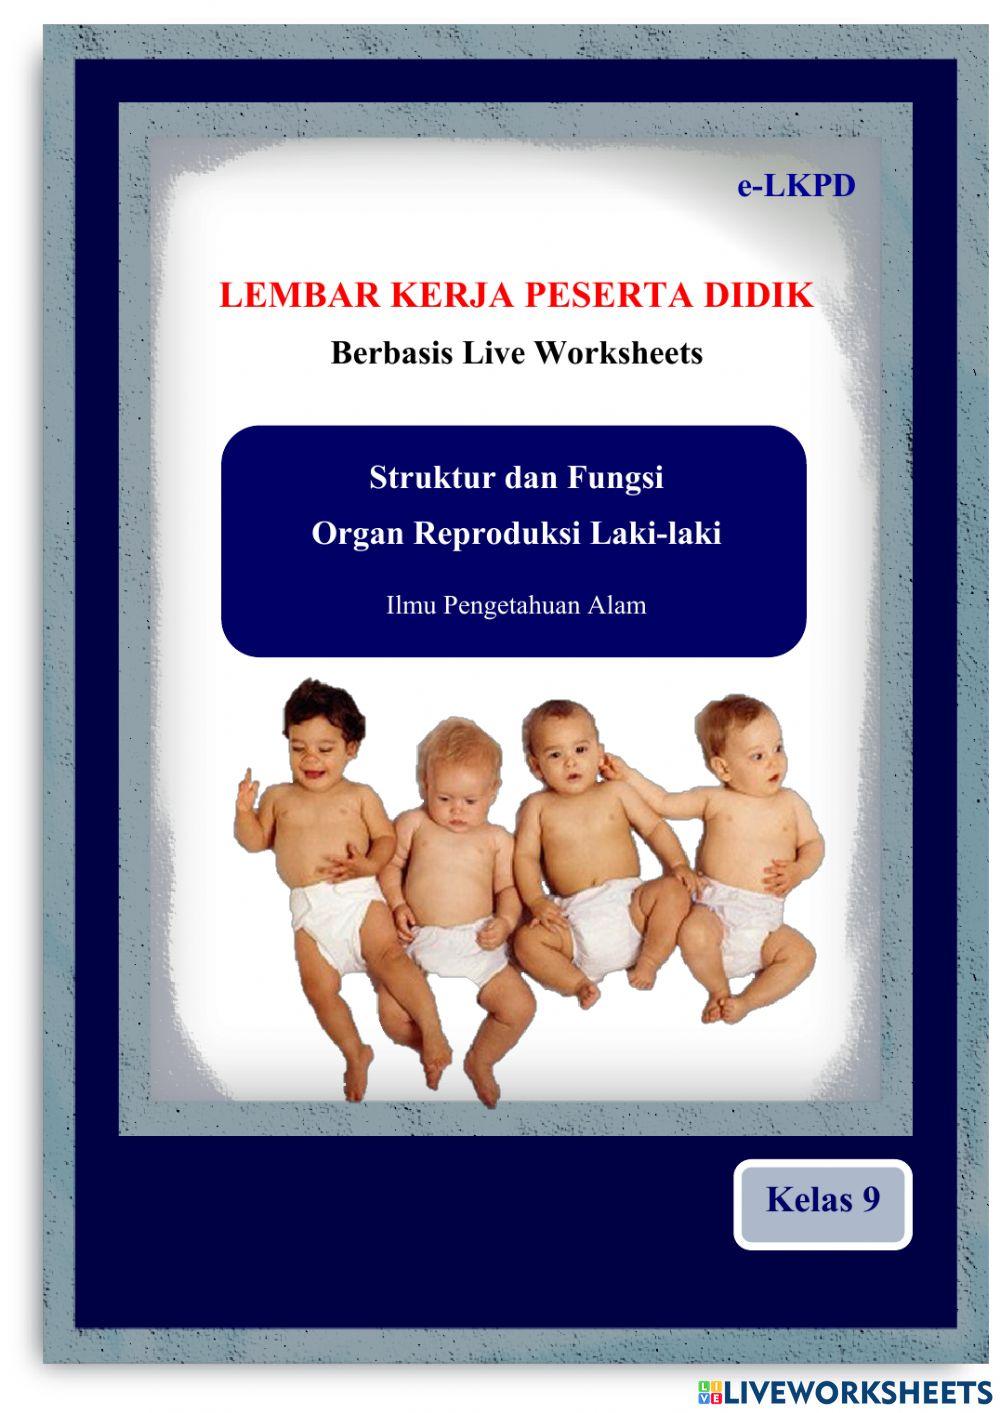 E-LKPD Organ Reproduksi Laki-laki